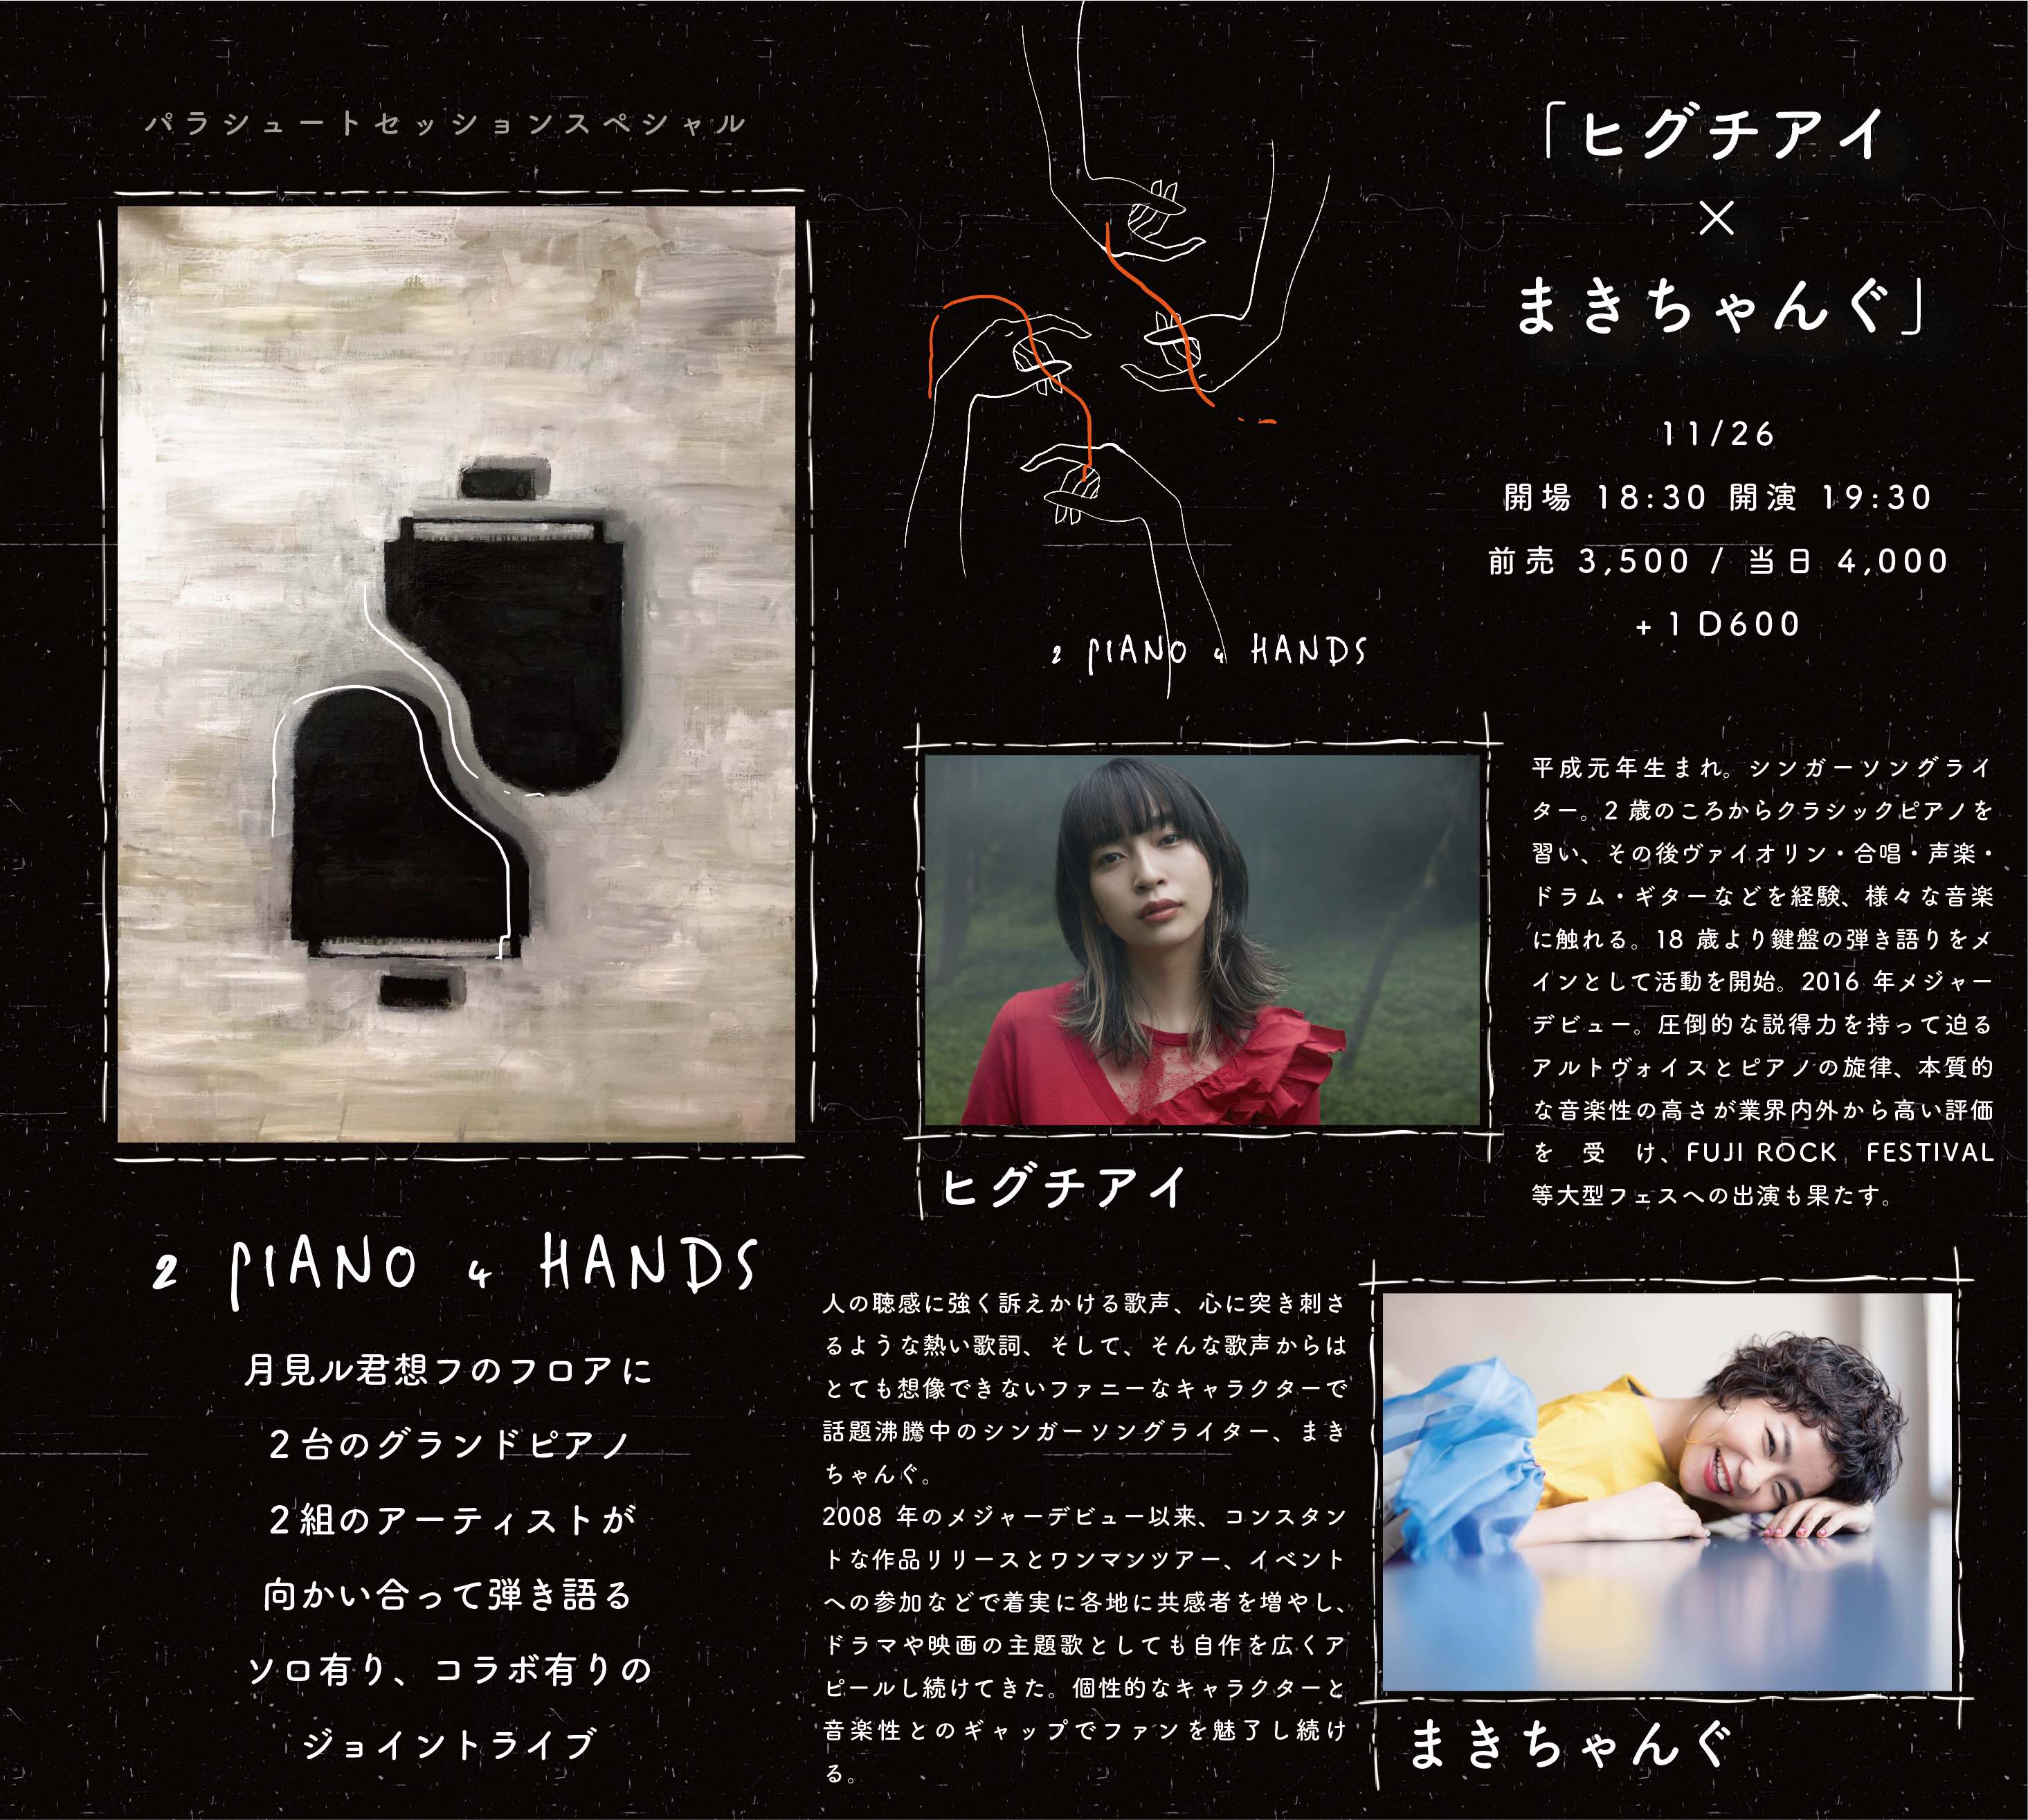 2 Piano 4 Hands Vol 2 ヒグチアイ X まきちゃんぐのチケット情報 予約 購入 販売 ライヴポケット